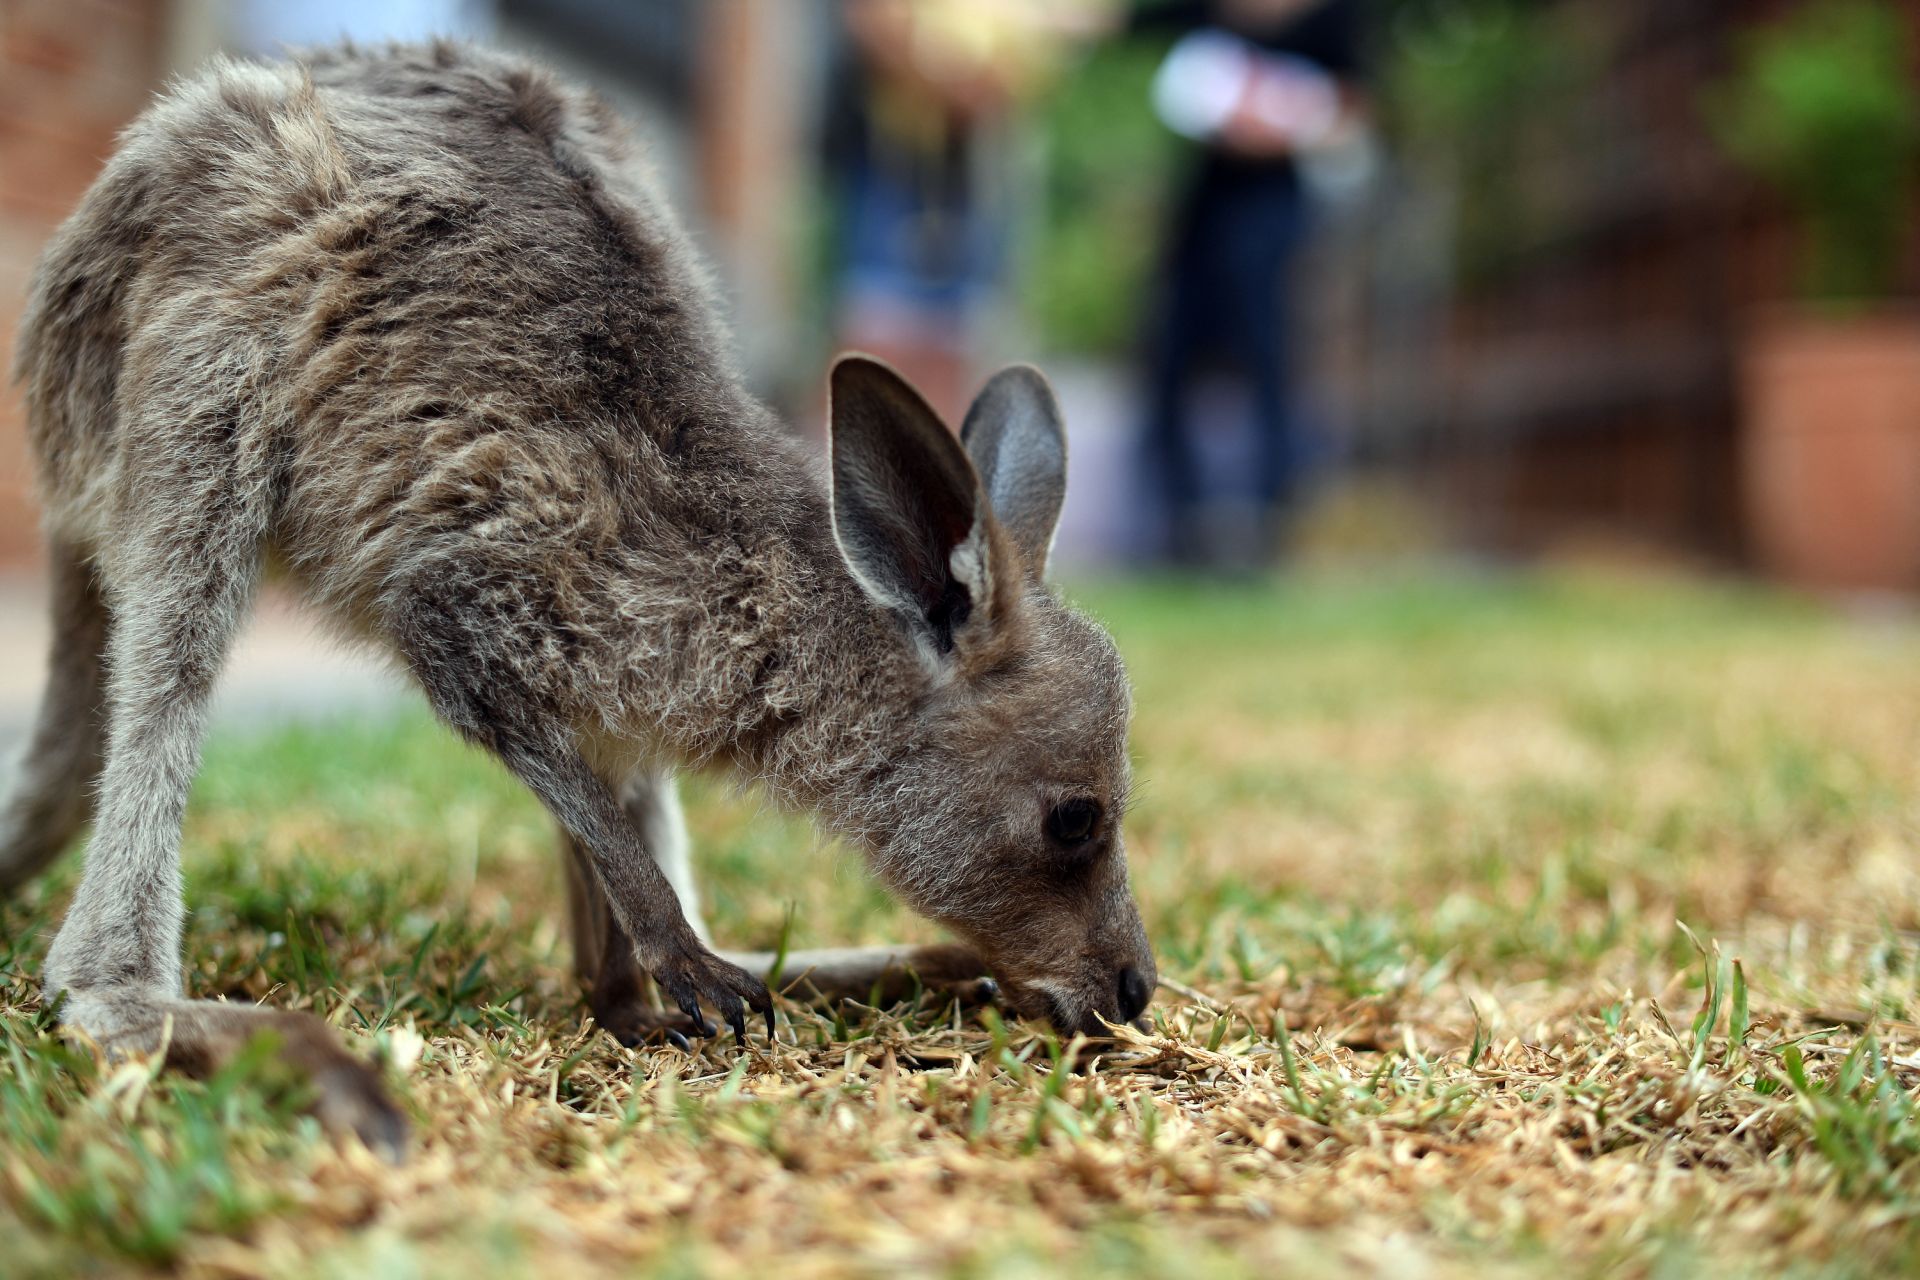 Macskamentes rezervátummal védik a kicsi kengurukat